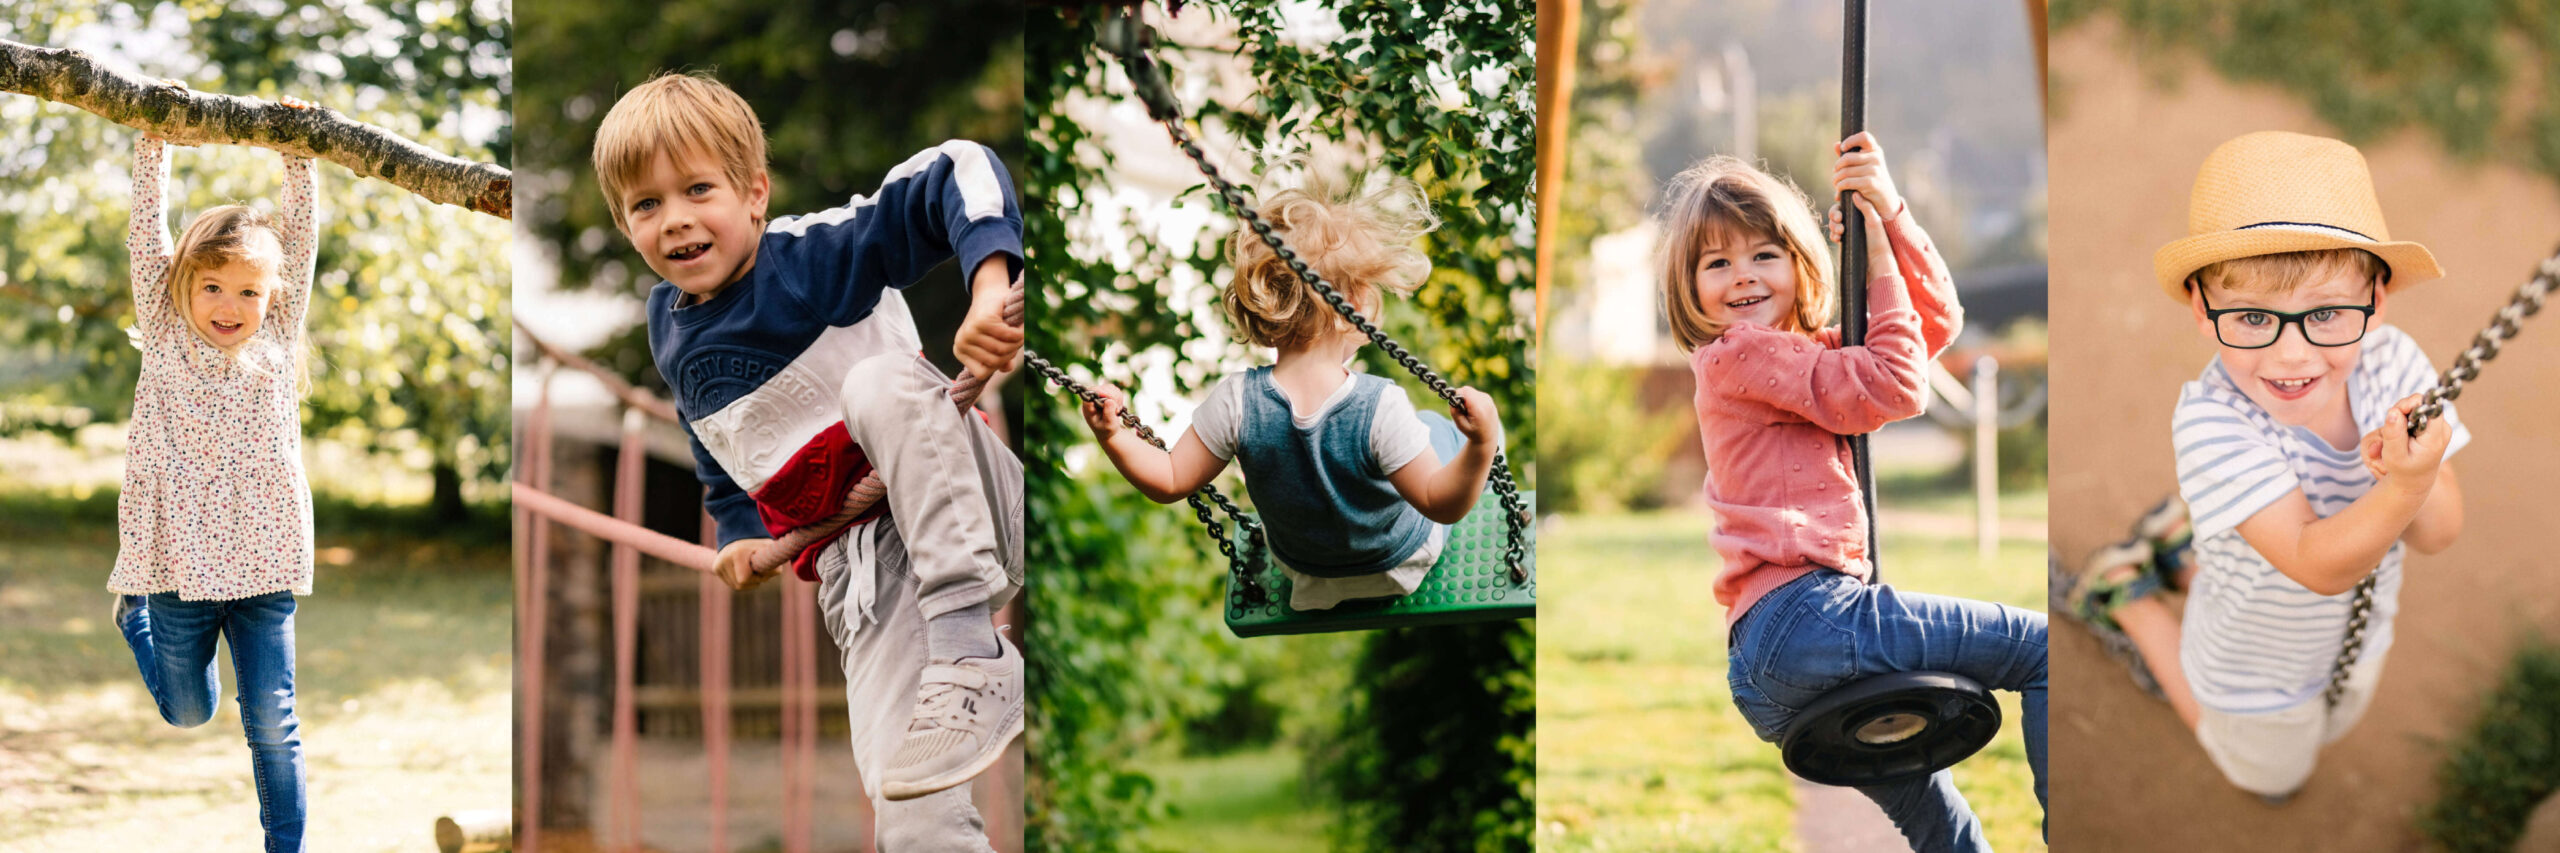 Collage von verschiedenen Kindergartenfotos.